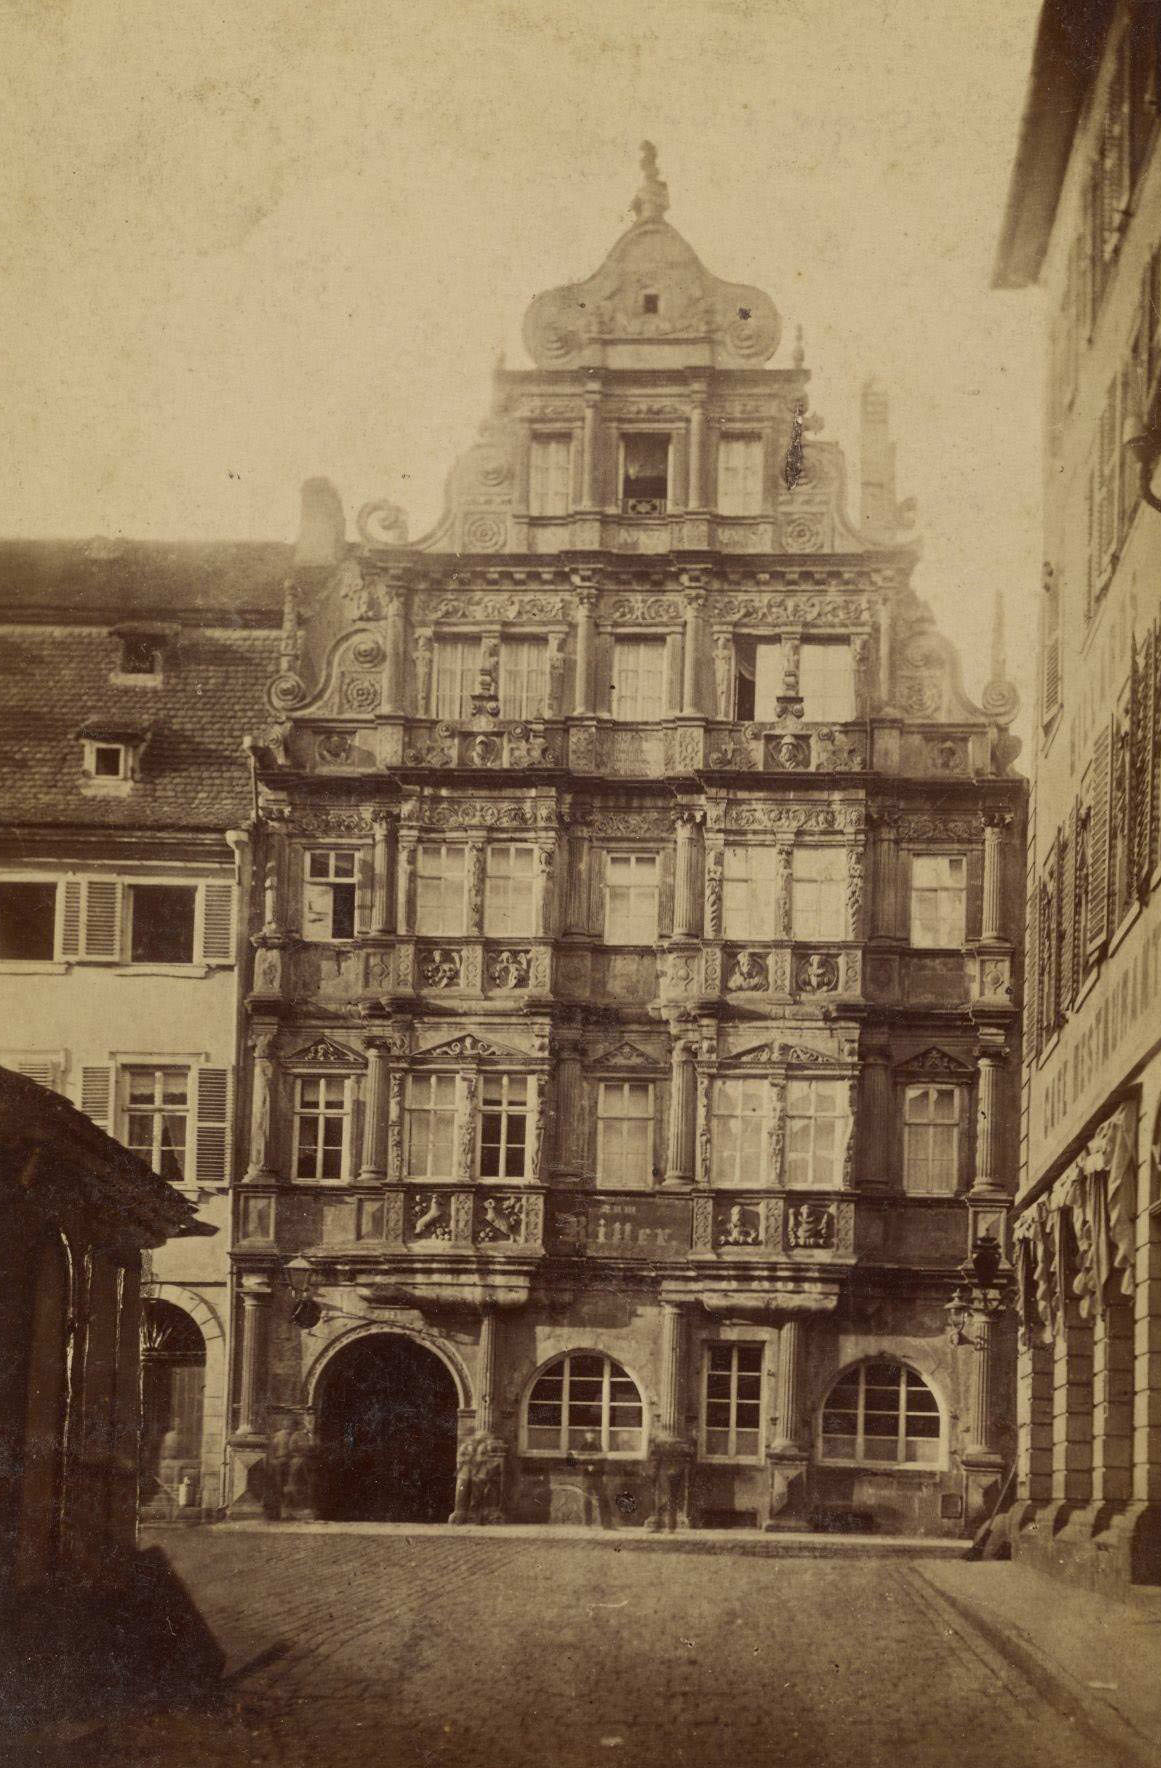 Building named Ritter, Heidelberg, by Eduard Lange, 1875.